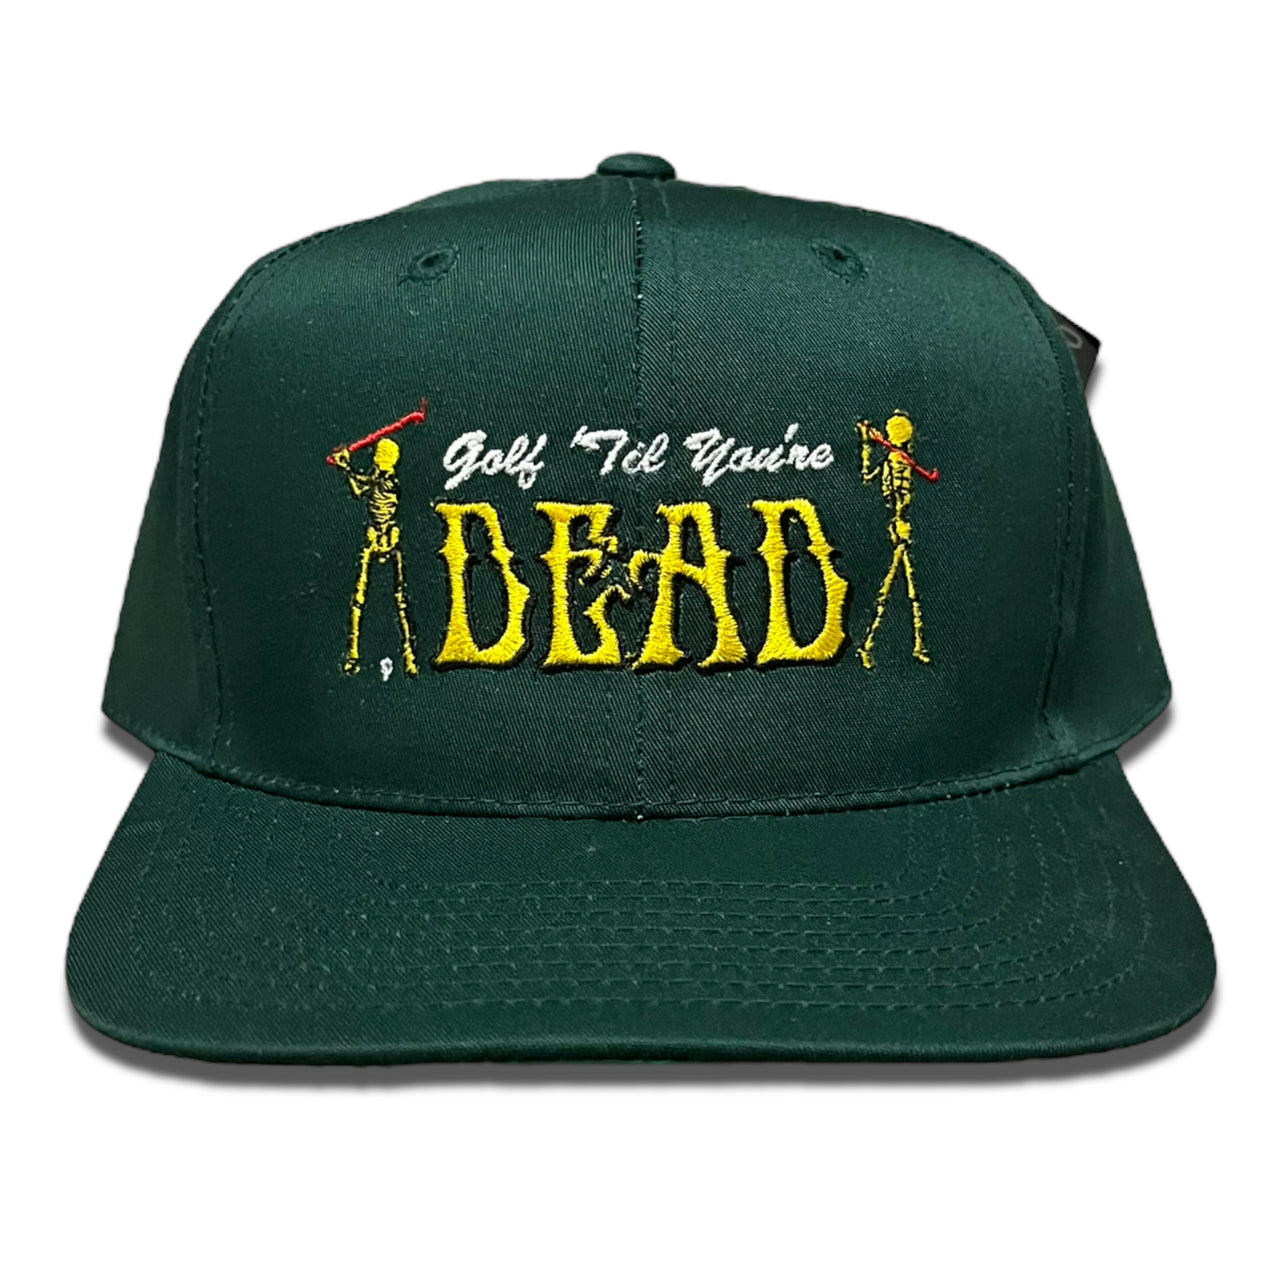 Golf Til You’re Dead Vintage a Upcycled SnapBack Hat